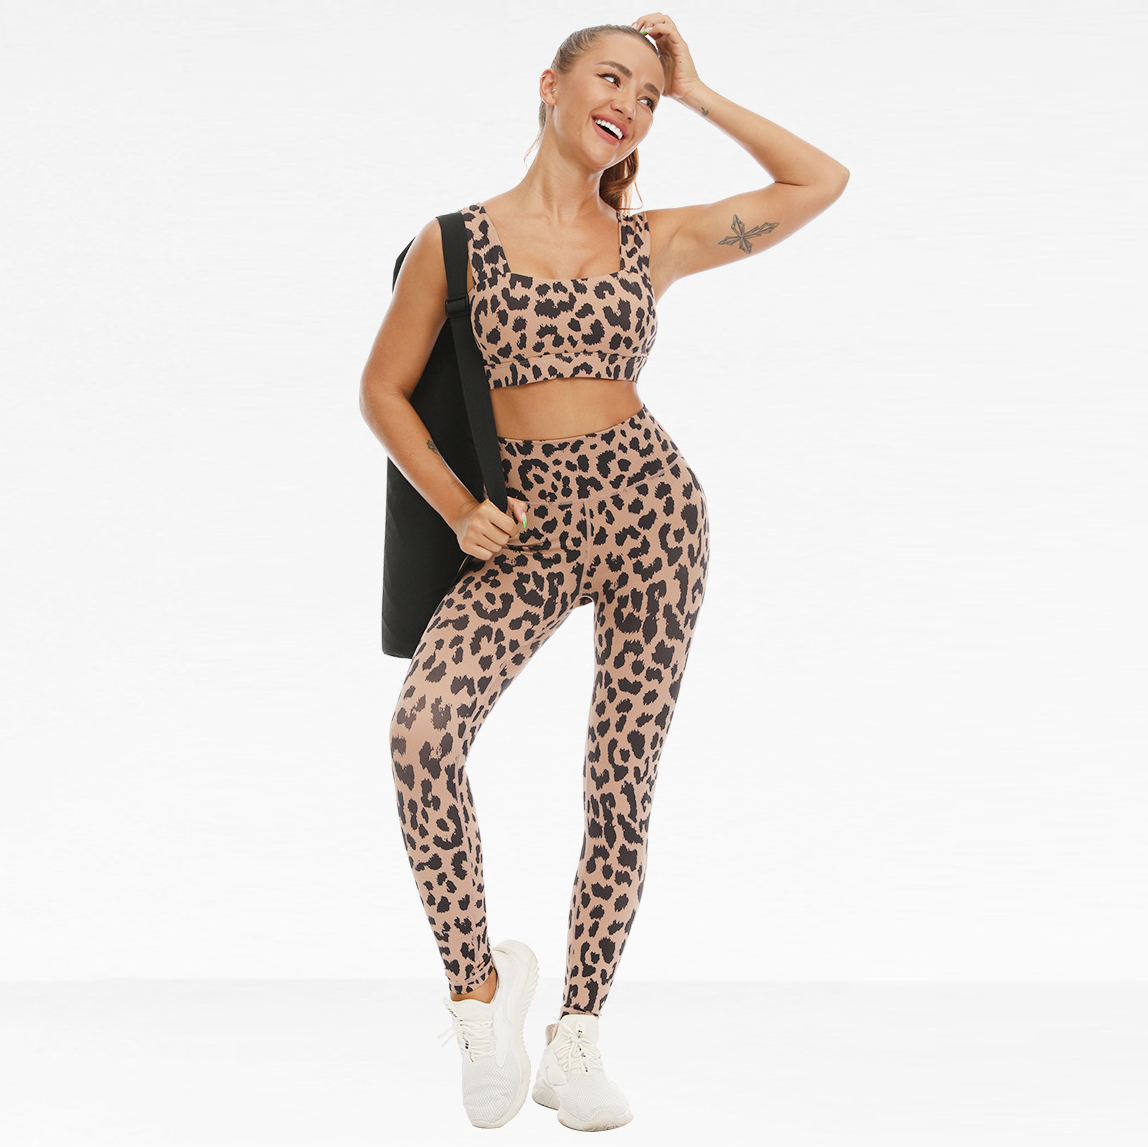 Leopard print yoga huvaa leggings za kunyoosha za michezo vipande viwili (7)